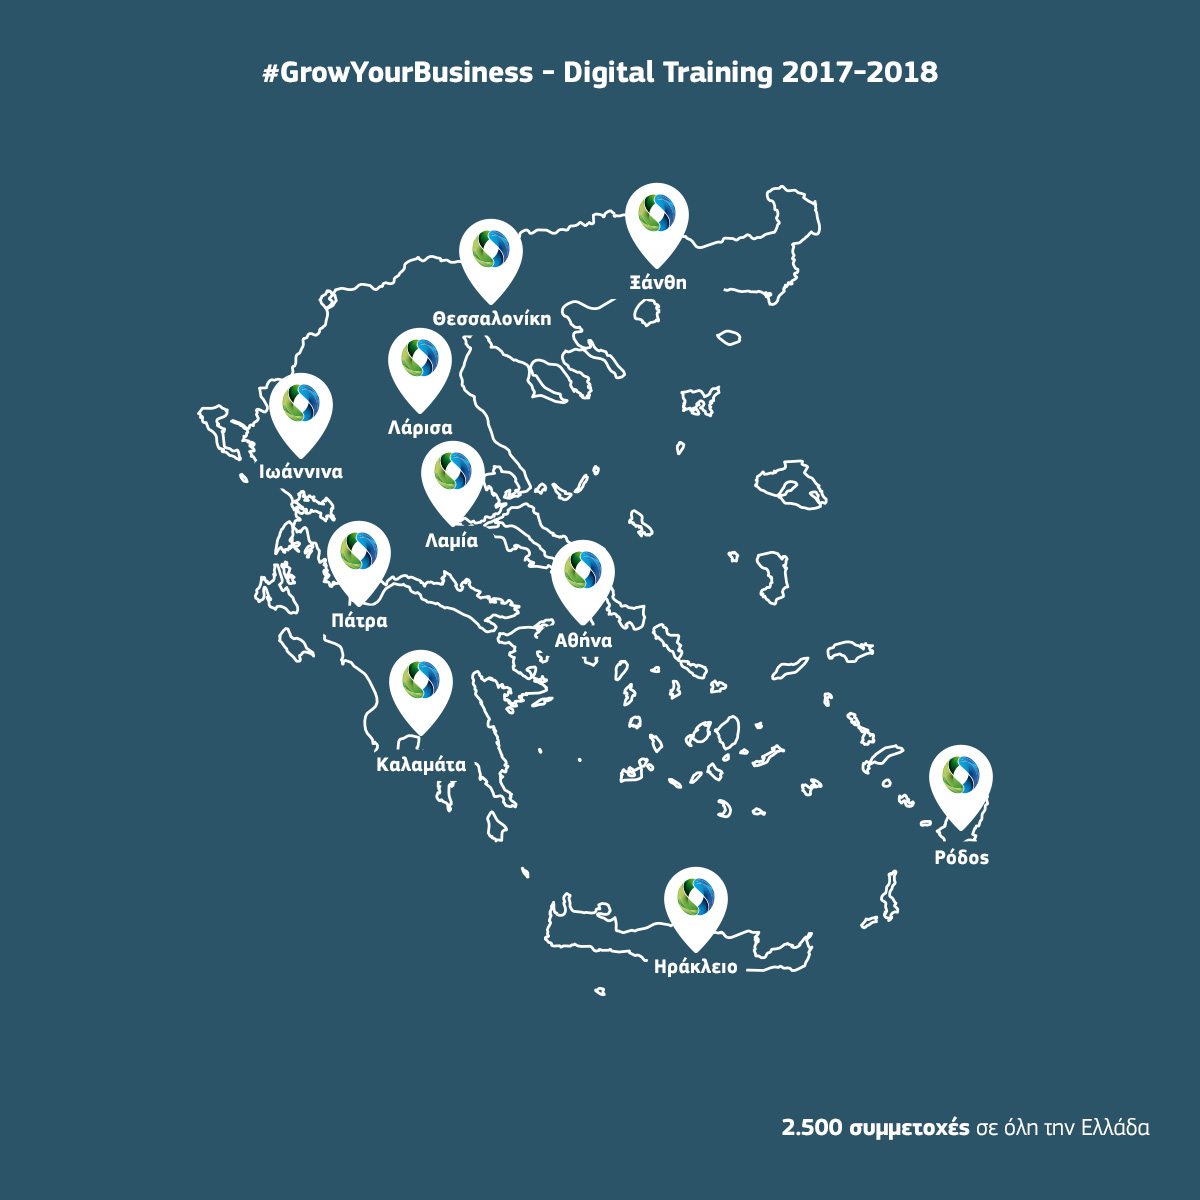 2500 επιχειρήσεις στην ψηφιακή εποχή με το #GrowYourBusiness